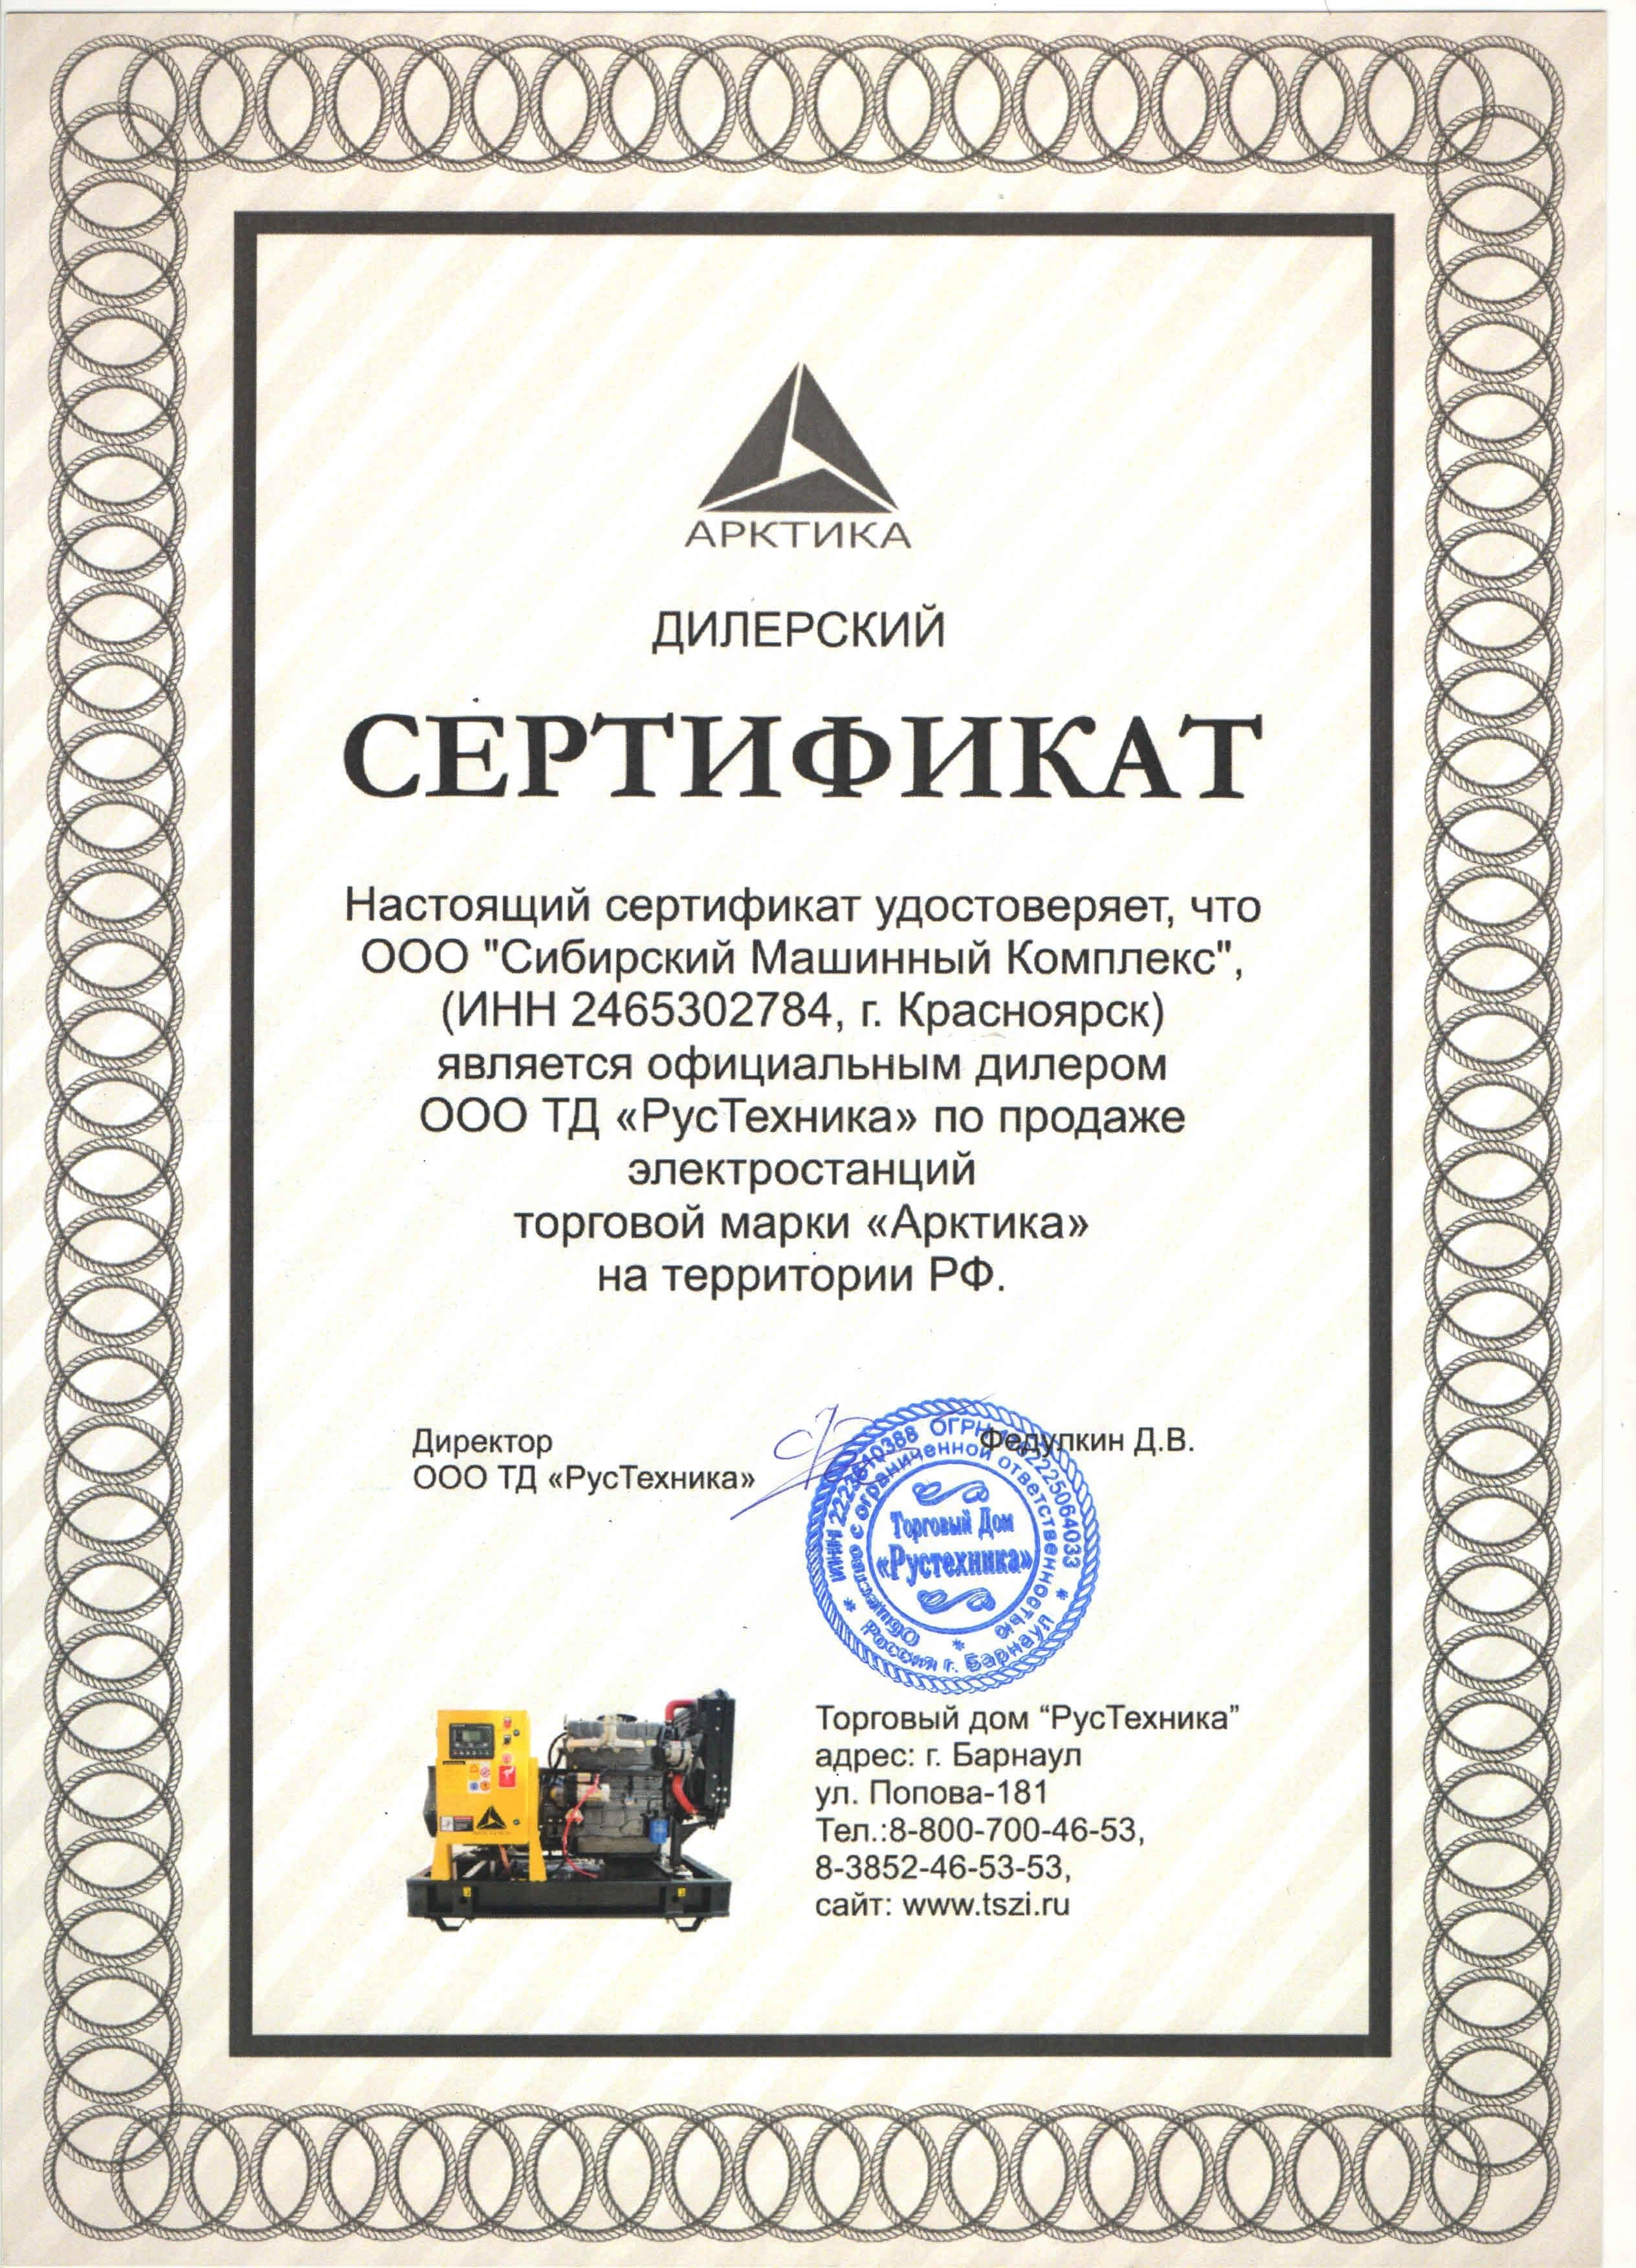 Сертификат дилерства ООО ТД «РусТехника» – СМК г. Красноярск